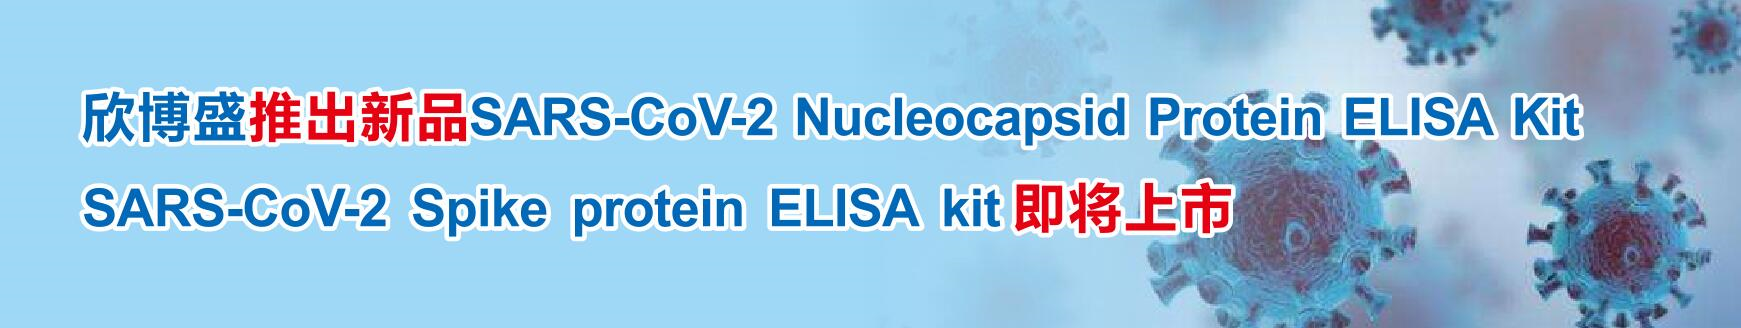 欣博盛推出新品SARS-CoV-2 Nucleocapsid Protein ELISA Kit